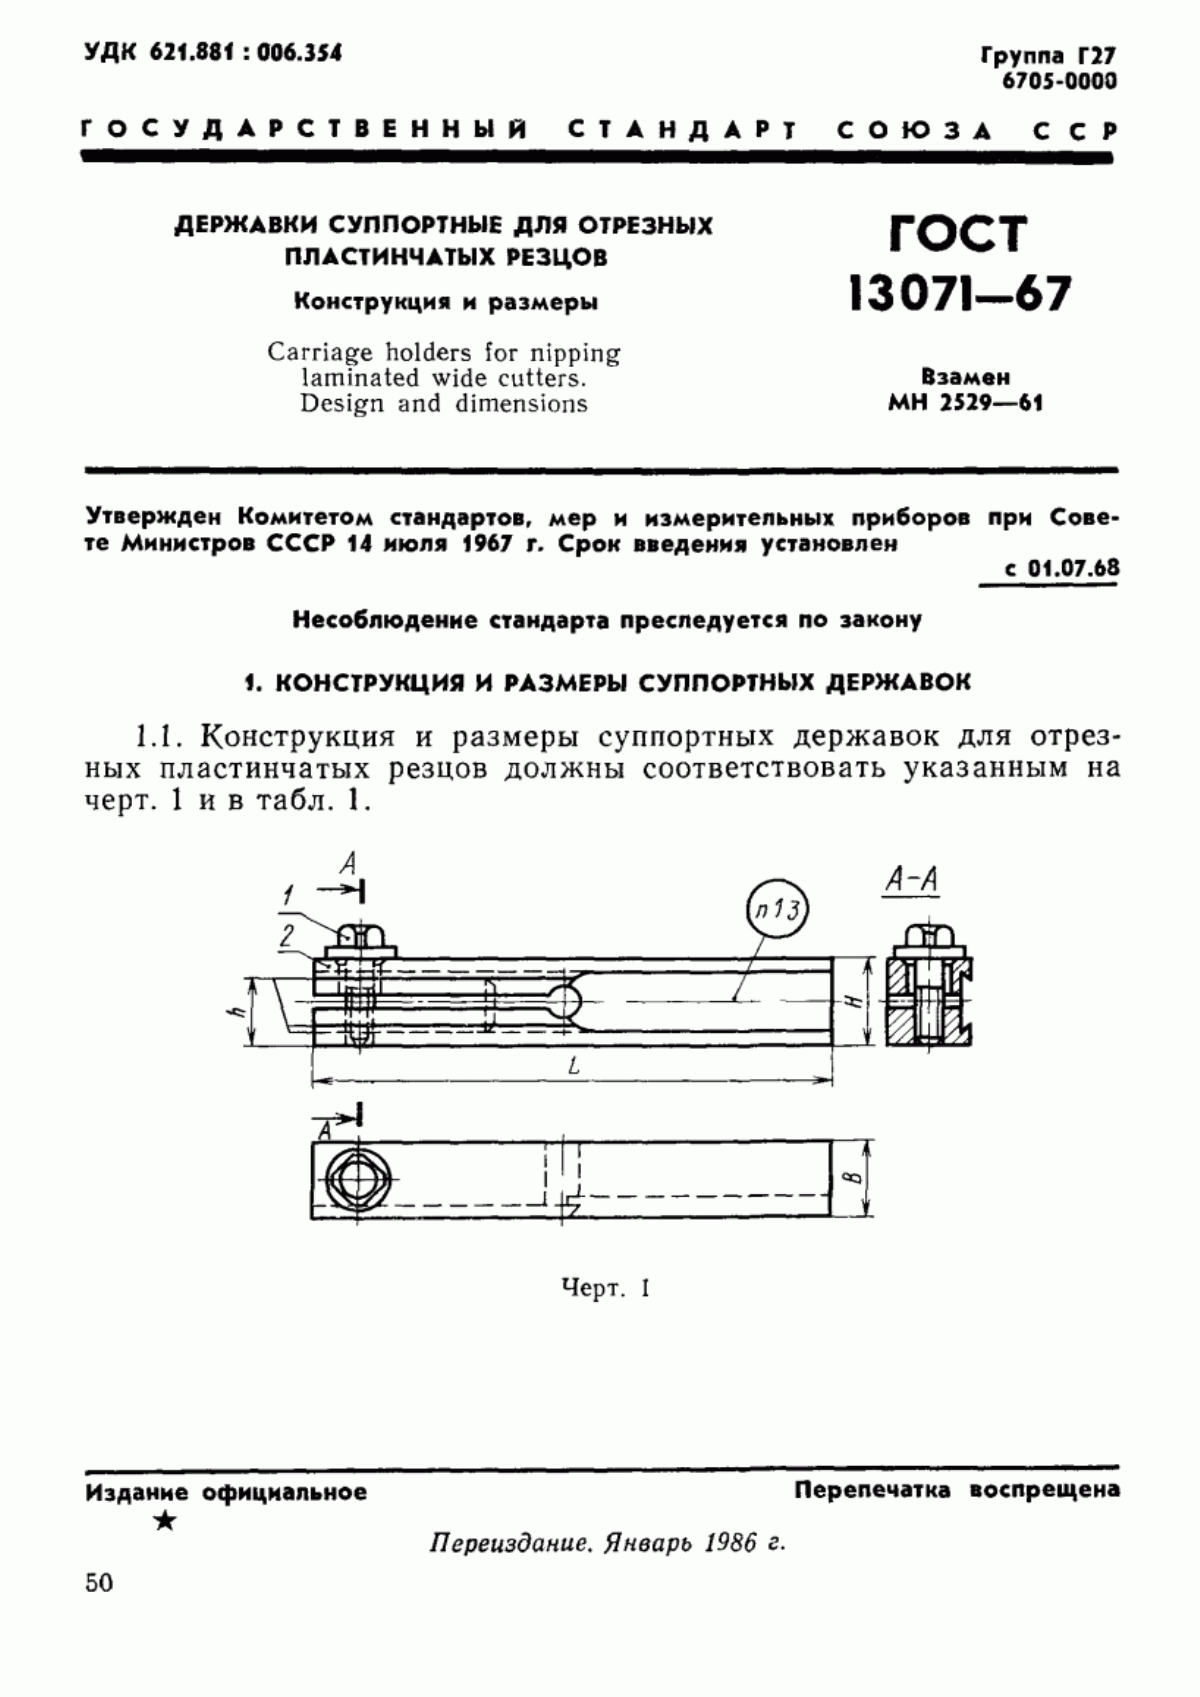 ГОСТ 13071-67 Державки суппортные для отрезных пластинчатых резцов. Конструкция и размеры